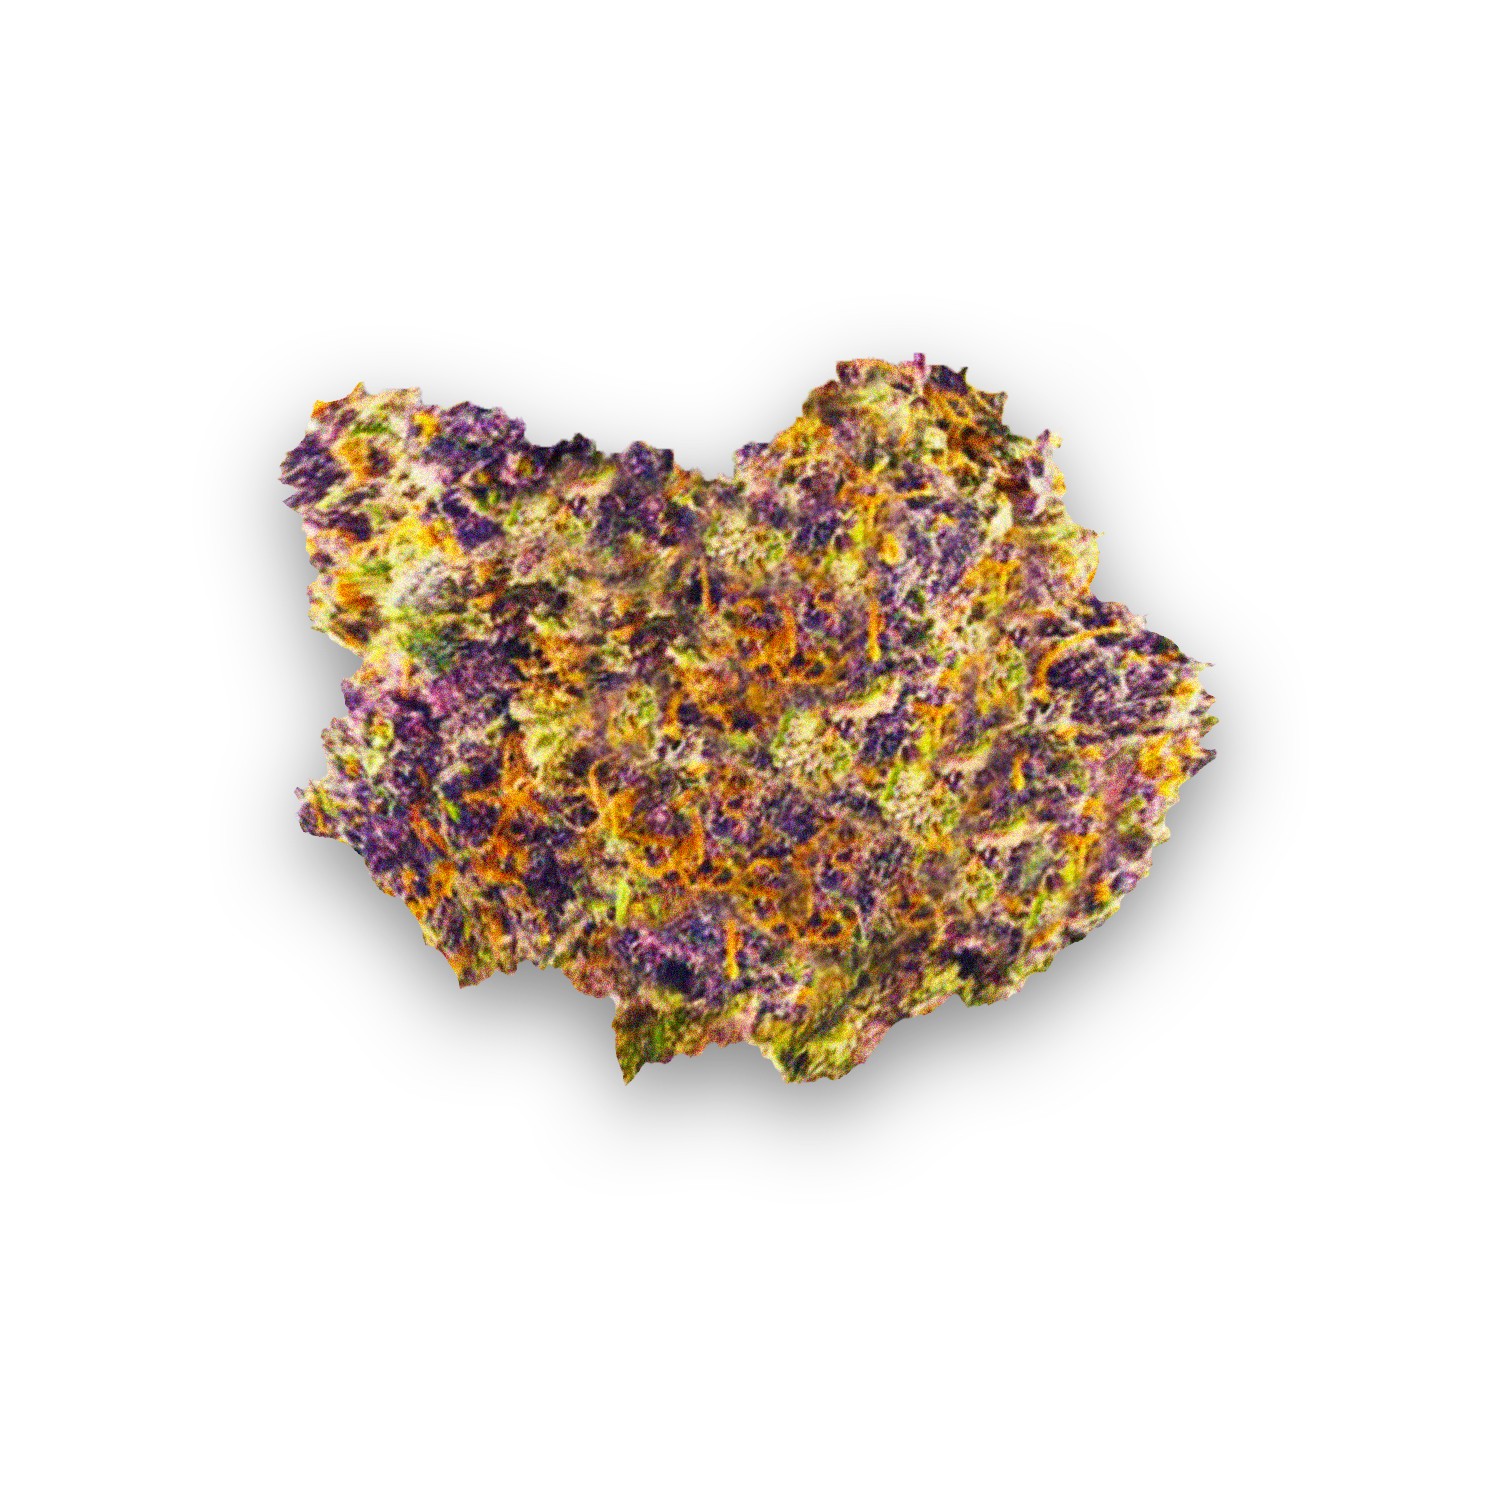 purple og kush strain review